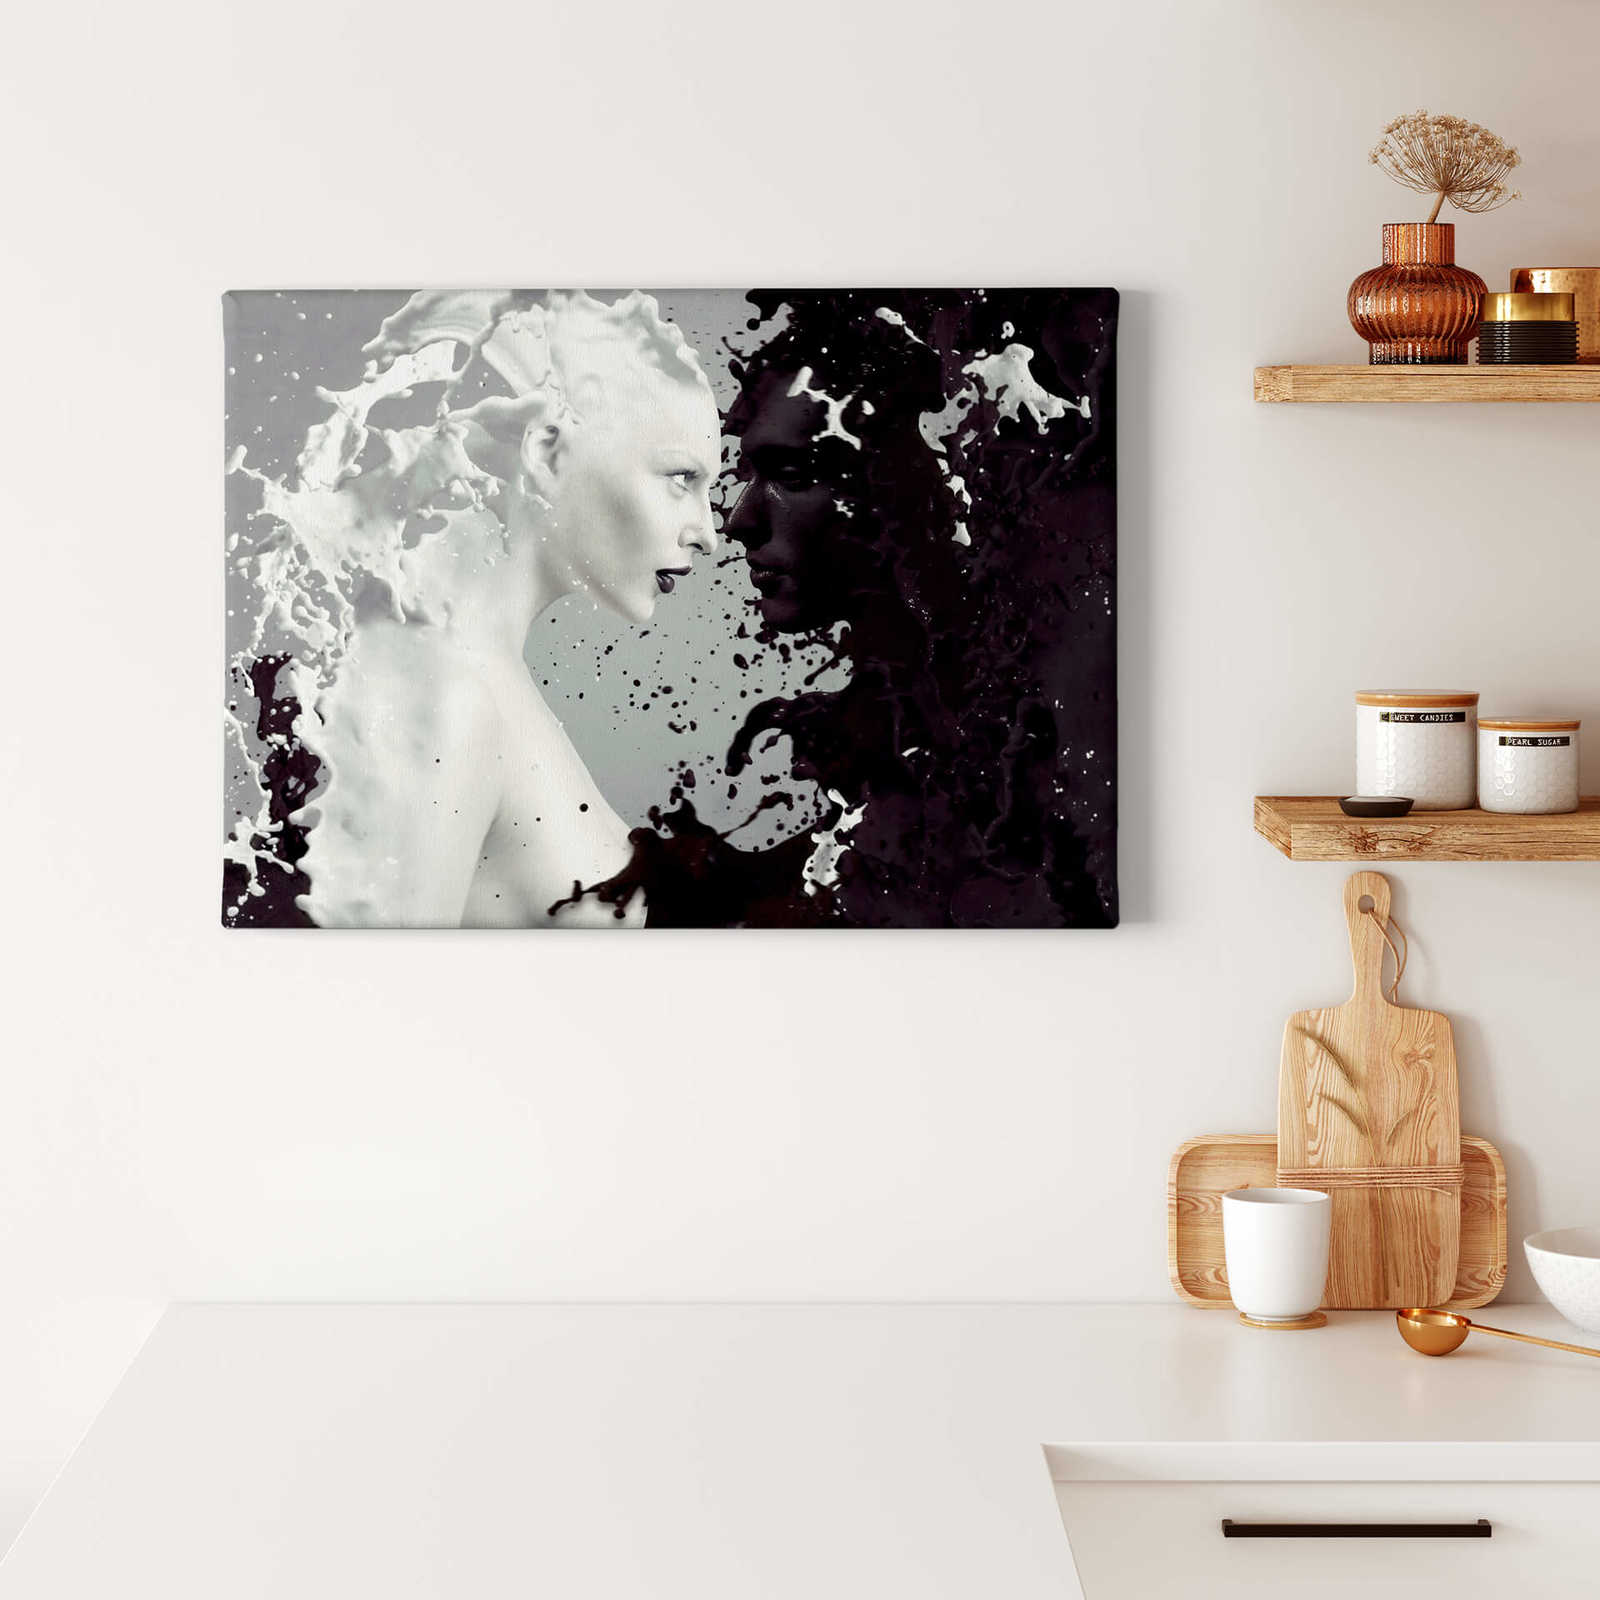             Leinwandbild "Milch & Kaffee" Modern Art – 0,70 m x 0,50 m
        